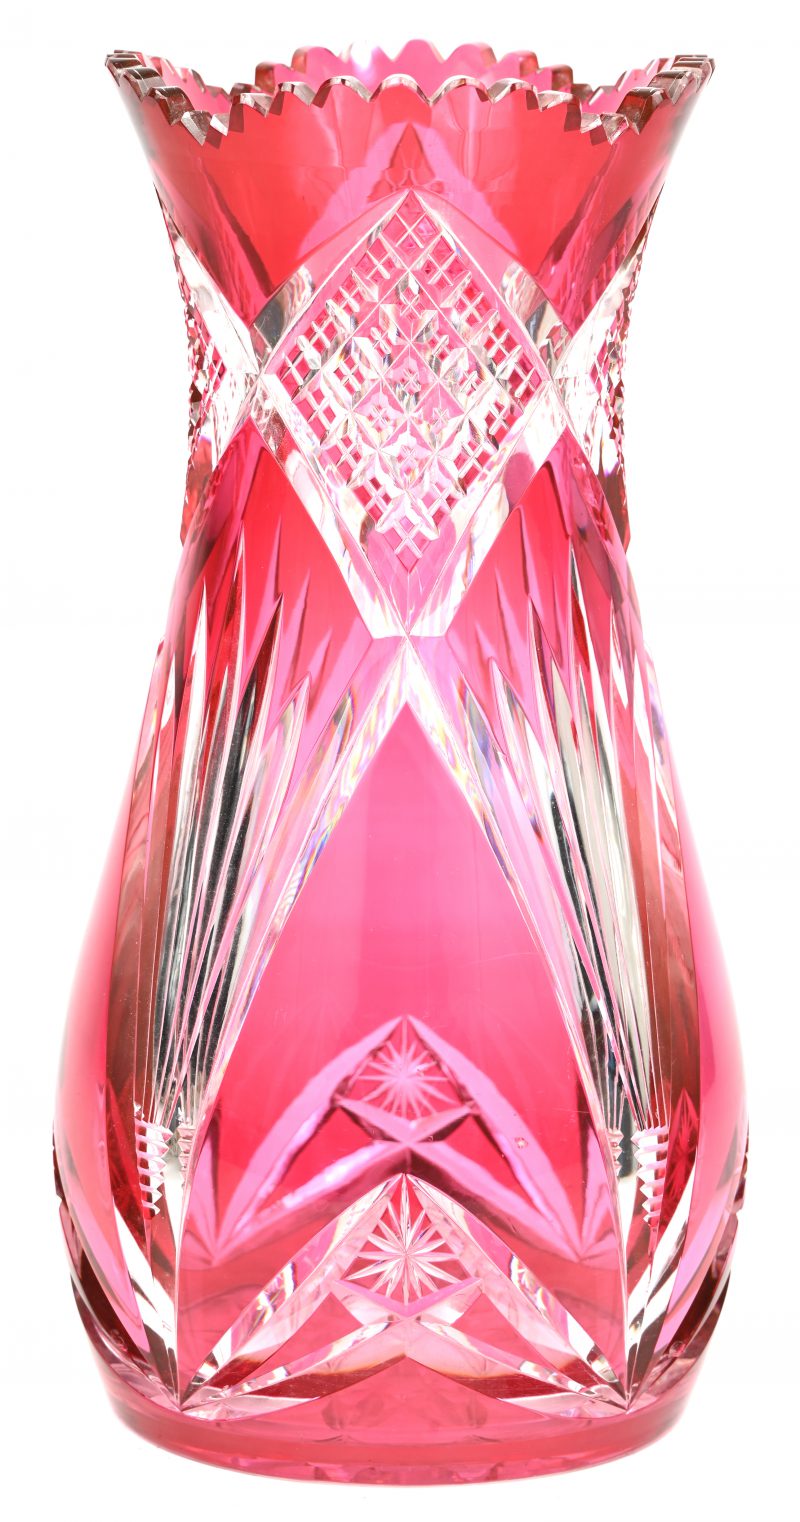 Een vaas “Xavier” van geslepen kristal, in de massa auberginerood gekleurd. Niet gemerkt. Model van Hubert Fouargé. Kleine randschilfers onderaan en bovenaan.